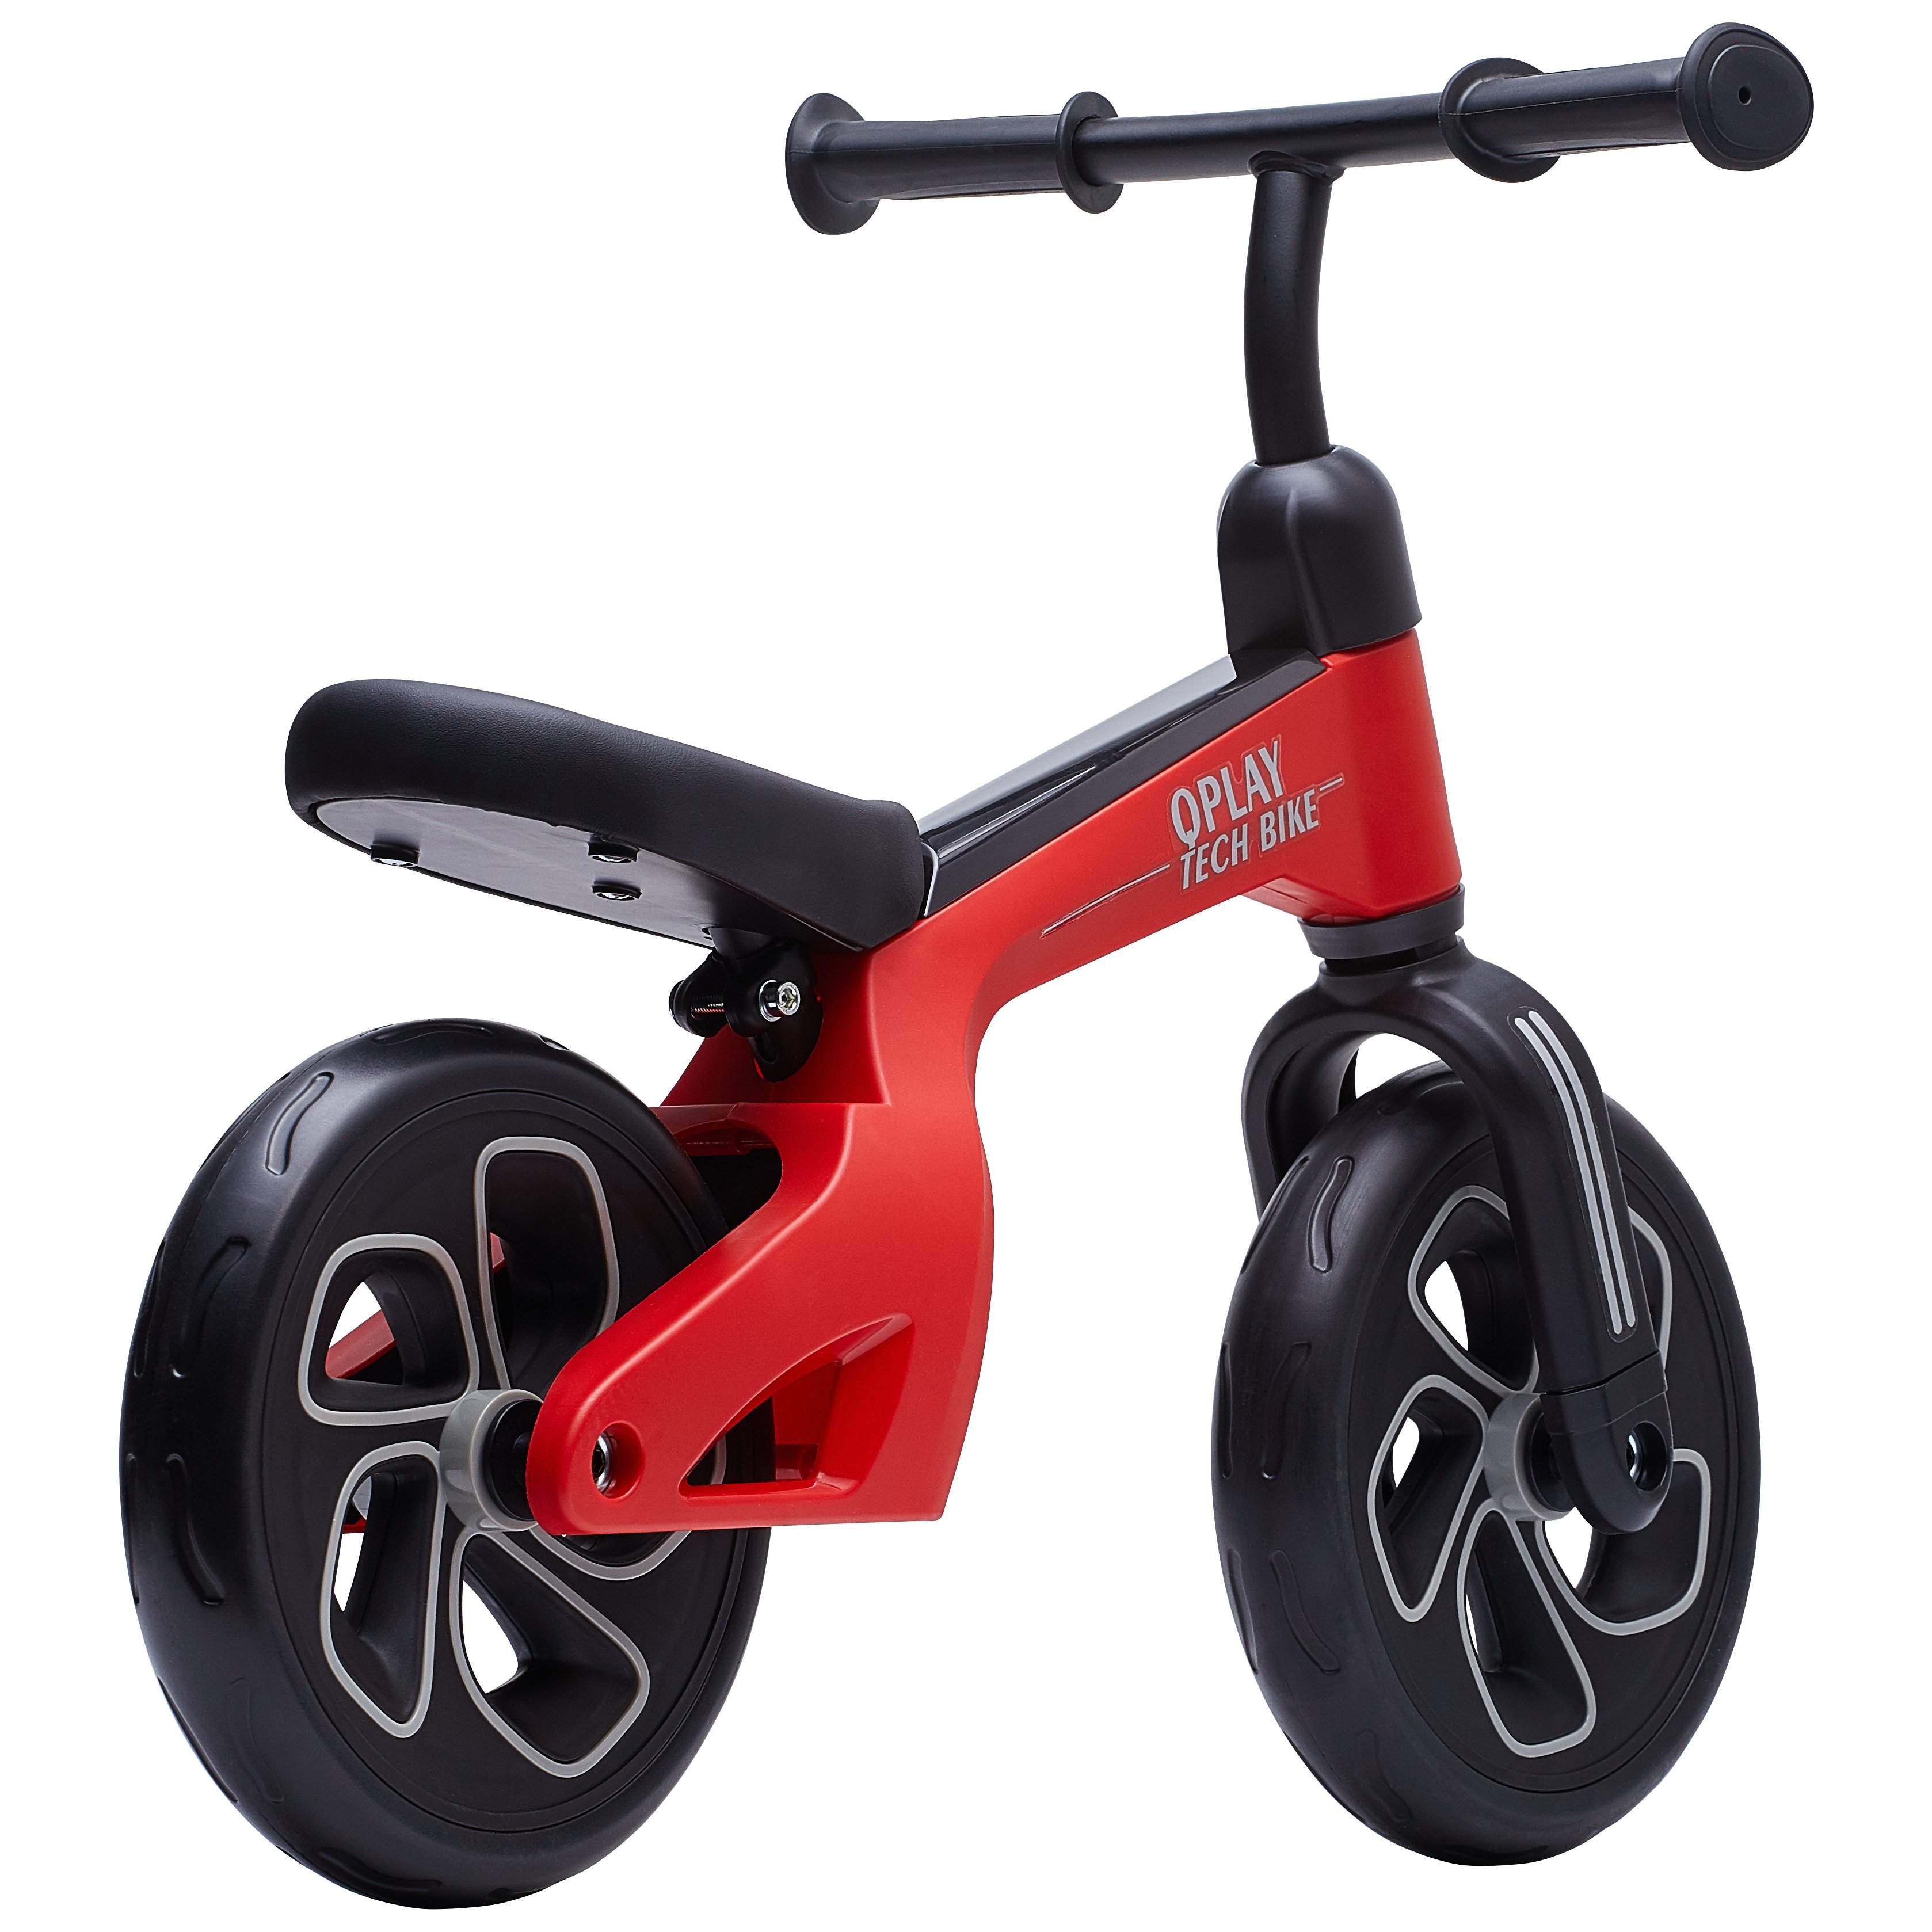 Беговел детский Qplay Tech Air, красный (QP-Bike-001Red) - фото 2